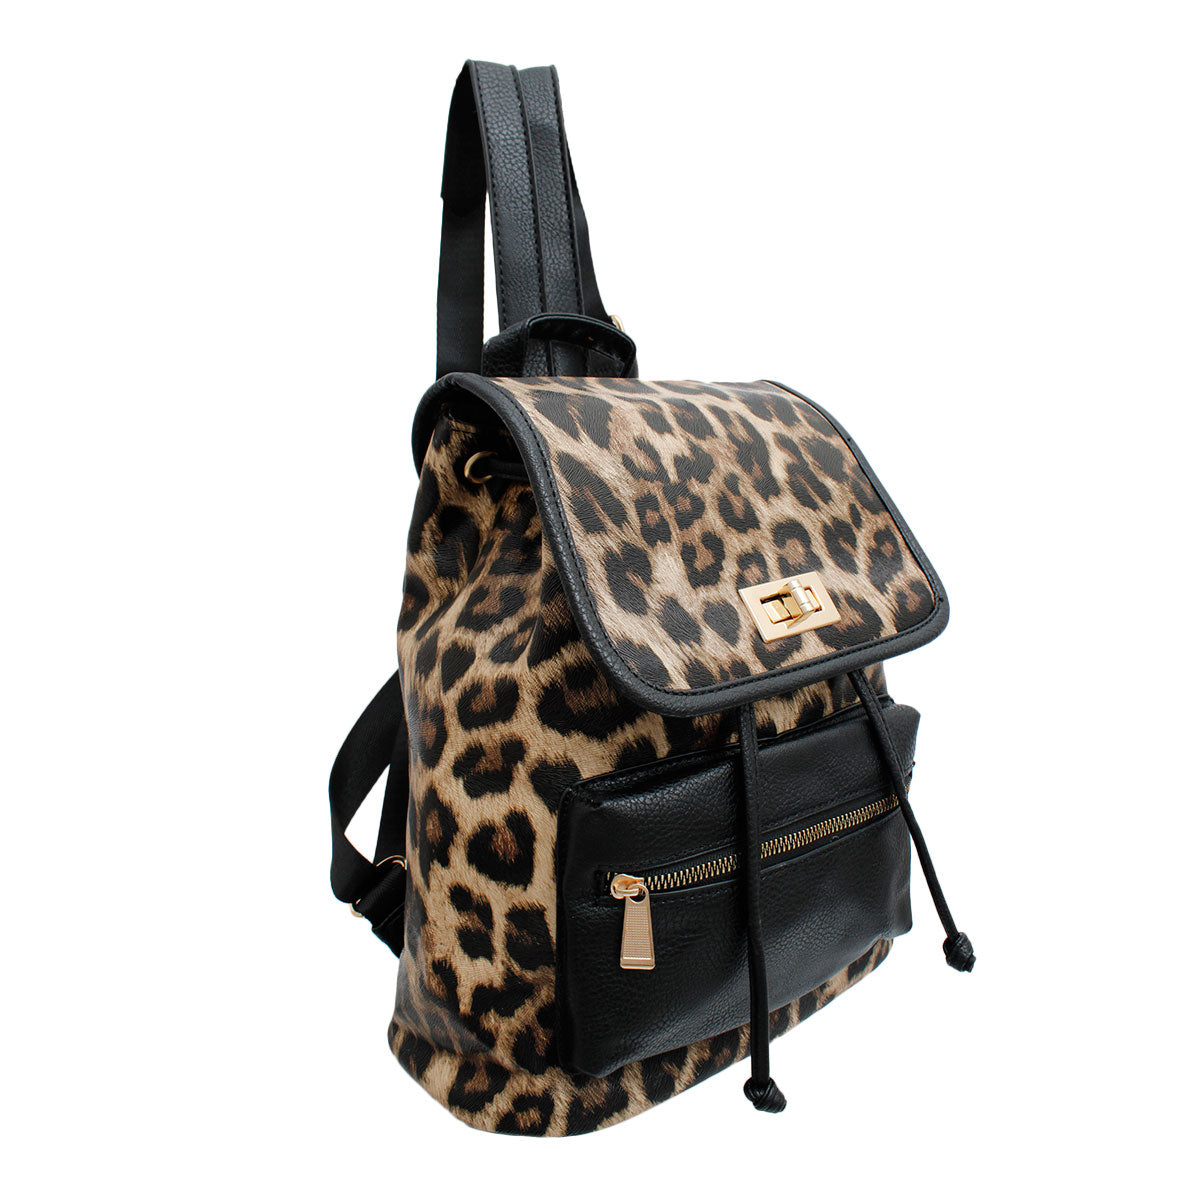 Black Leopard Flap Backpack Set